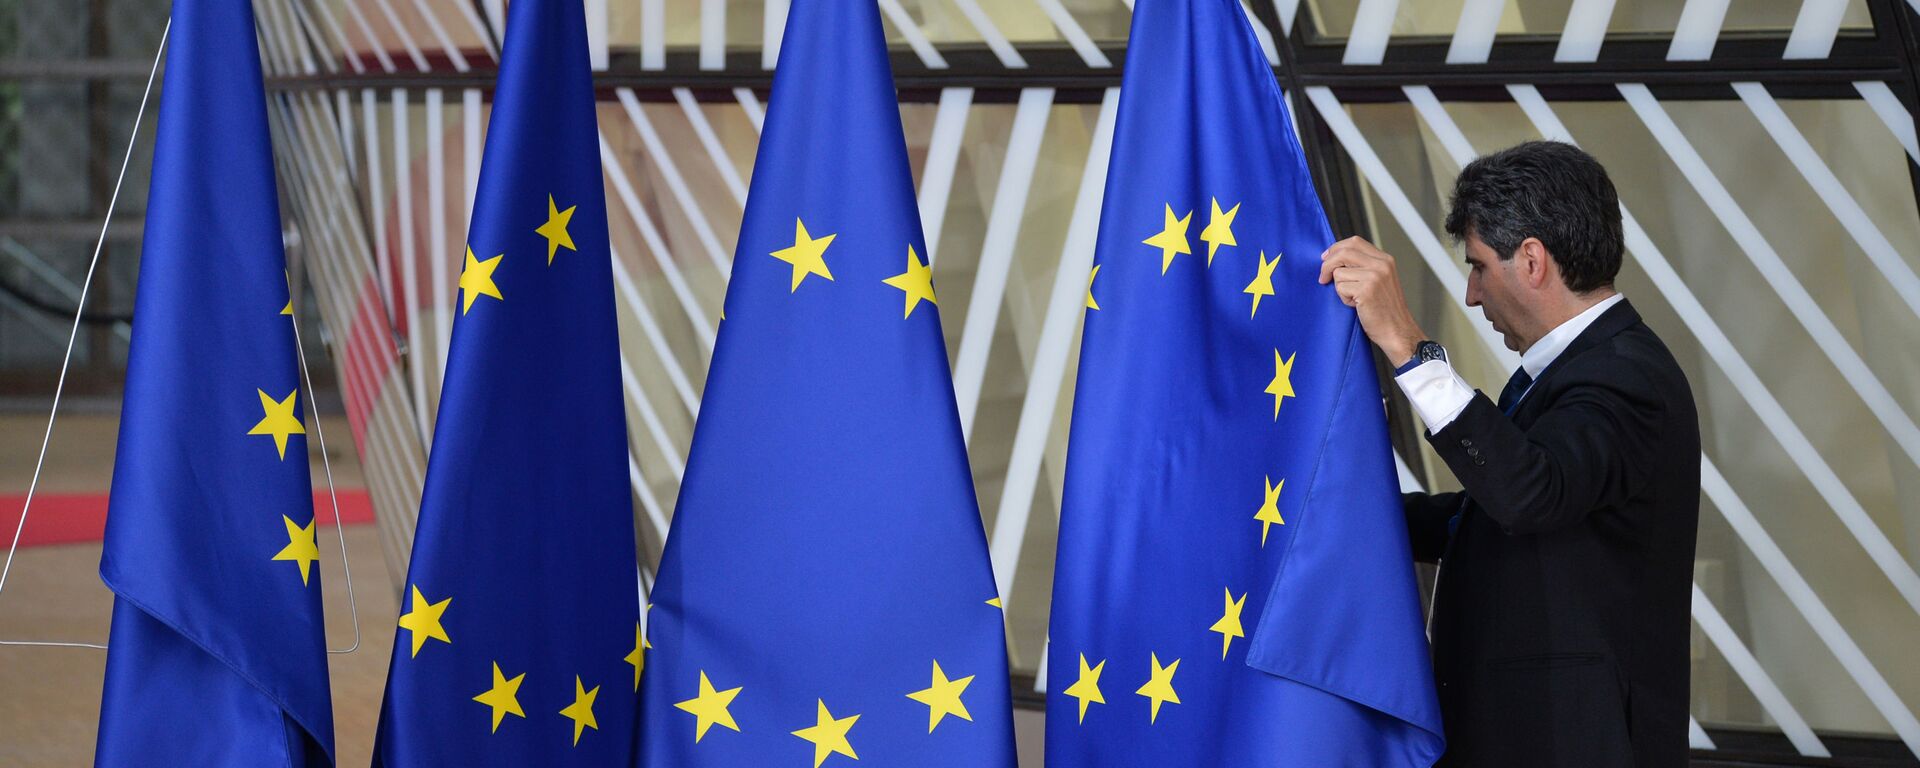 Флаги с символикой Евросоюза в Брюсселе, архивное фото - Sputnik Lietuva, 1920, 02.01.2021